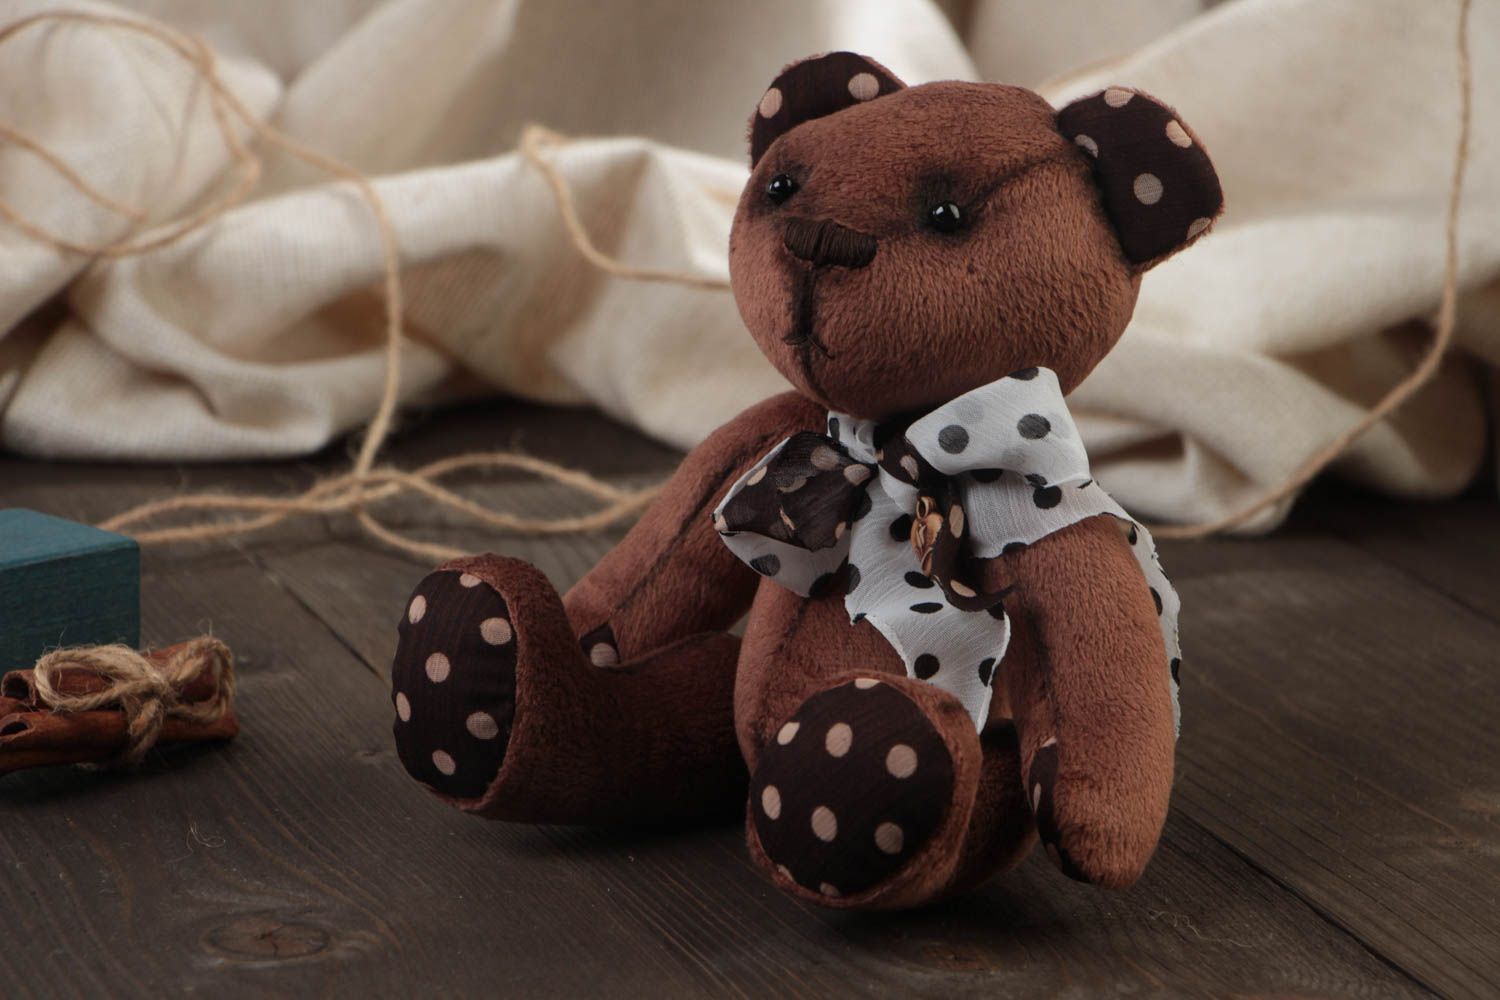 Мягкая игрушка медвежонок из плюша ручной работы милый шоколадного цвета с бантиком фото 1